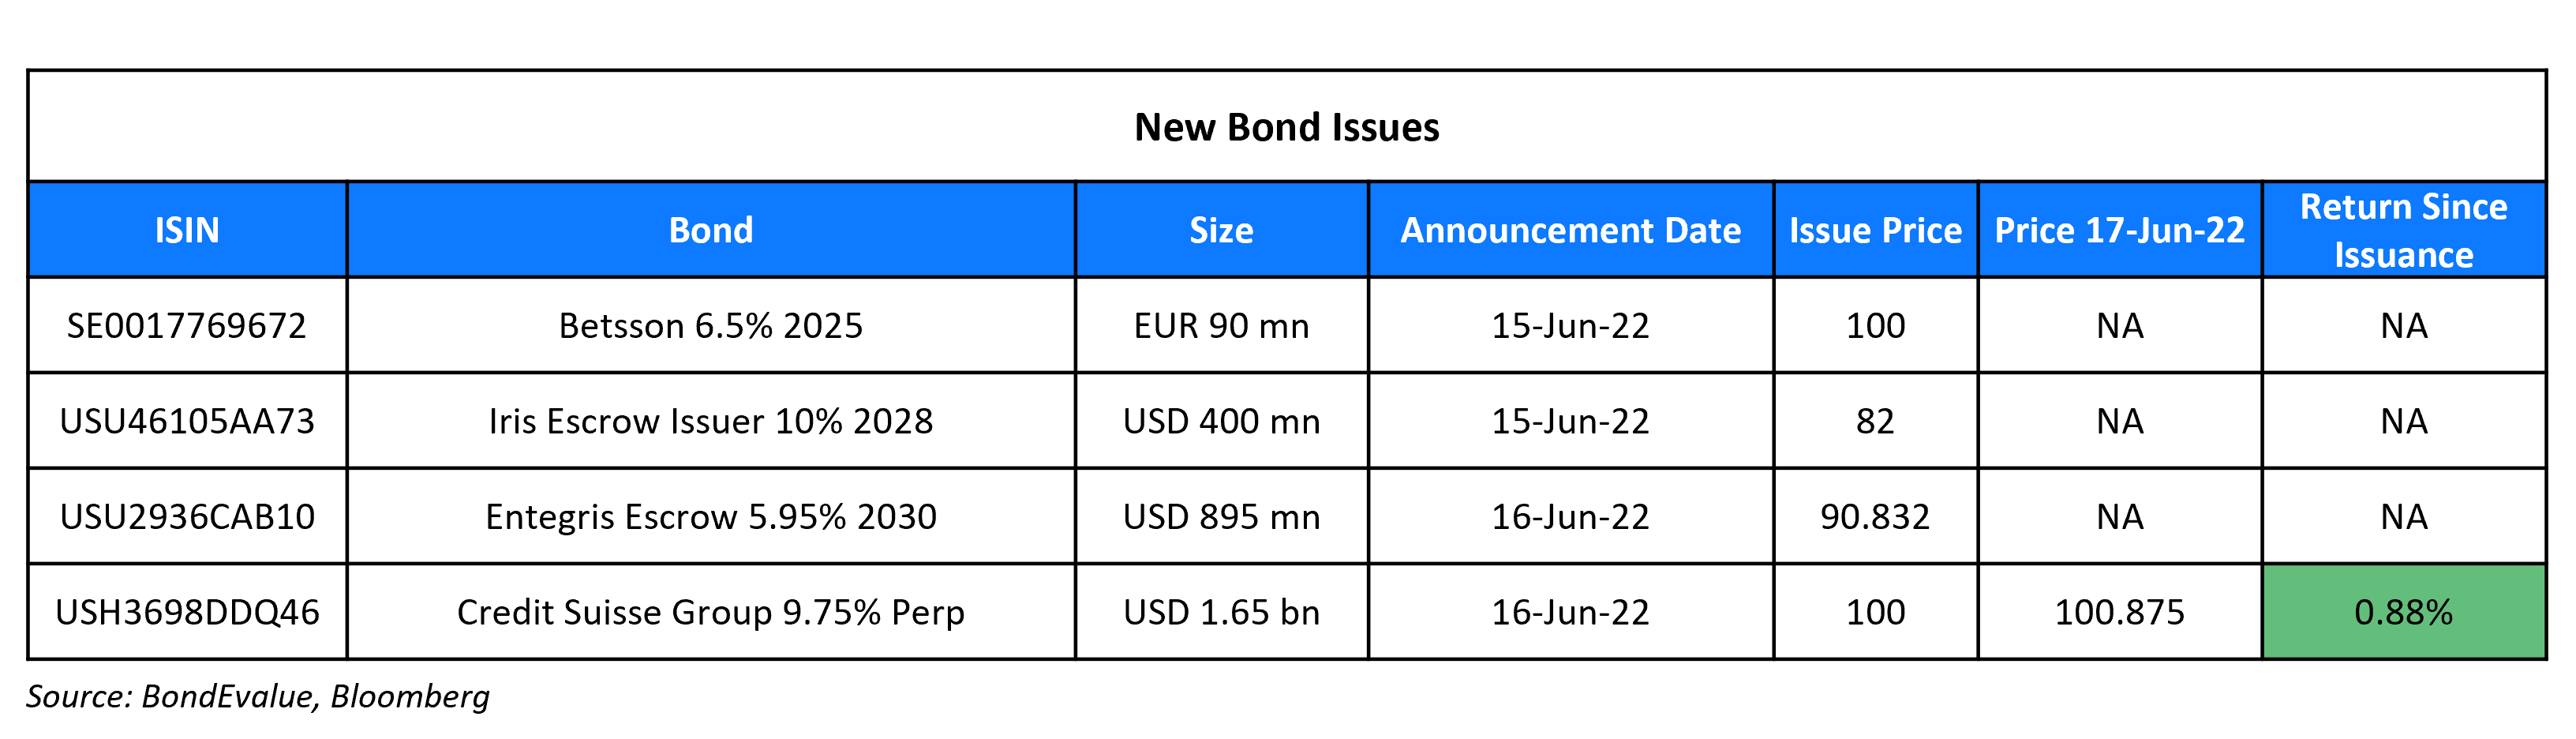 New Bond Issues 17 Jun 22